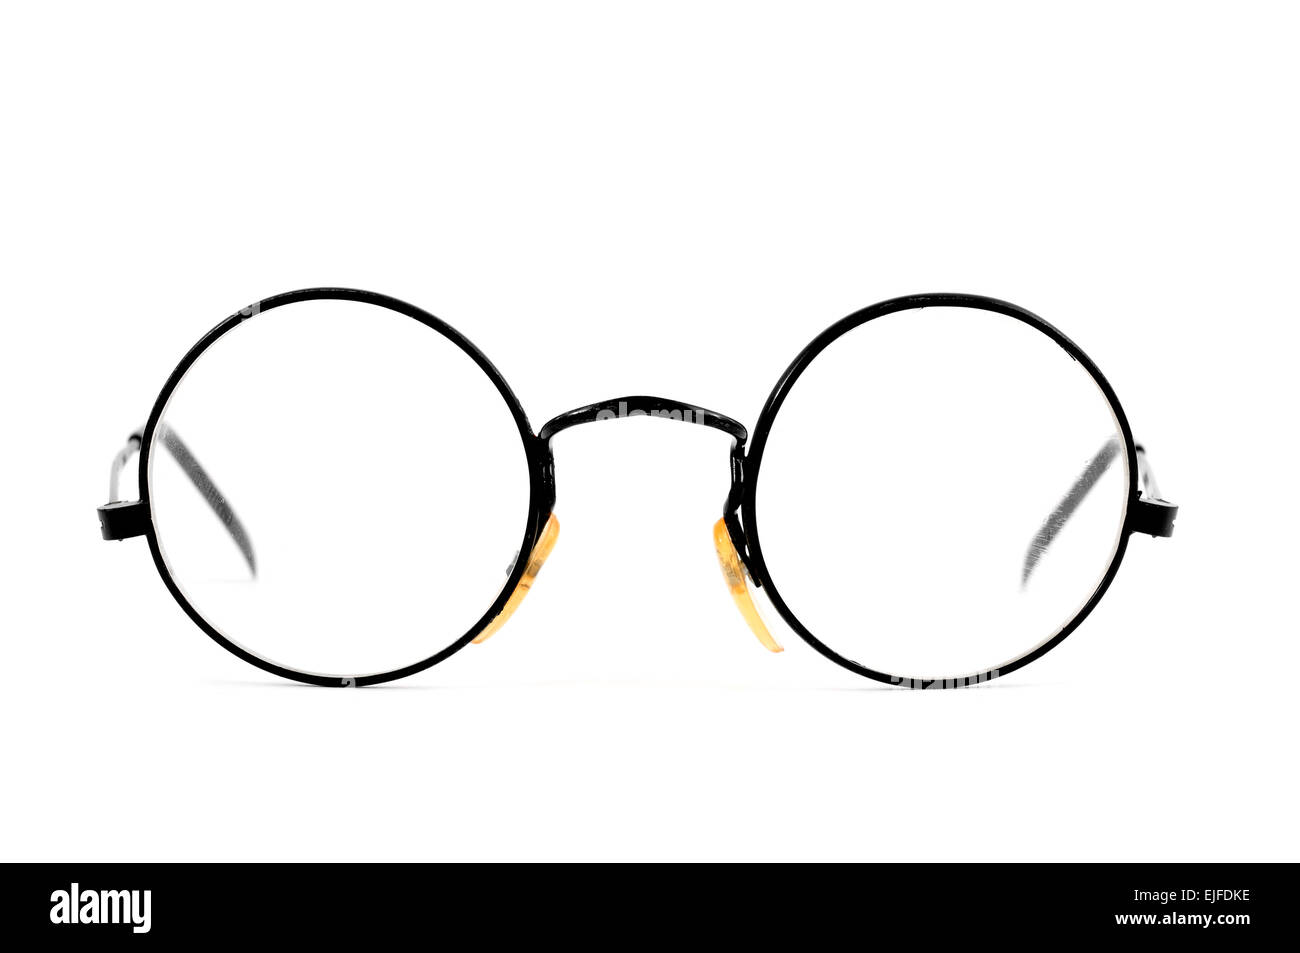 Un par de anteojos con lentes redondas sobre un fondo blanco Fotografía de  stock - Alamy